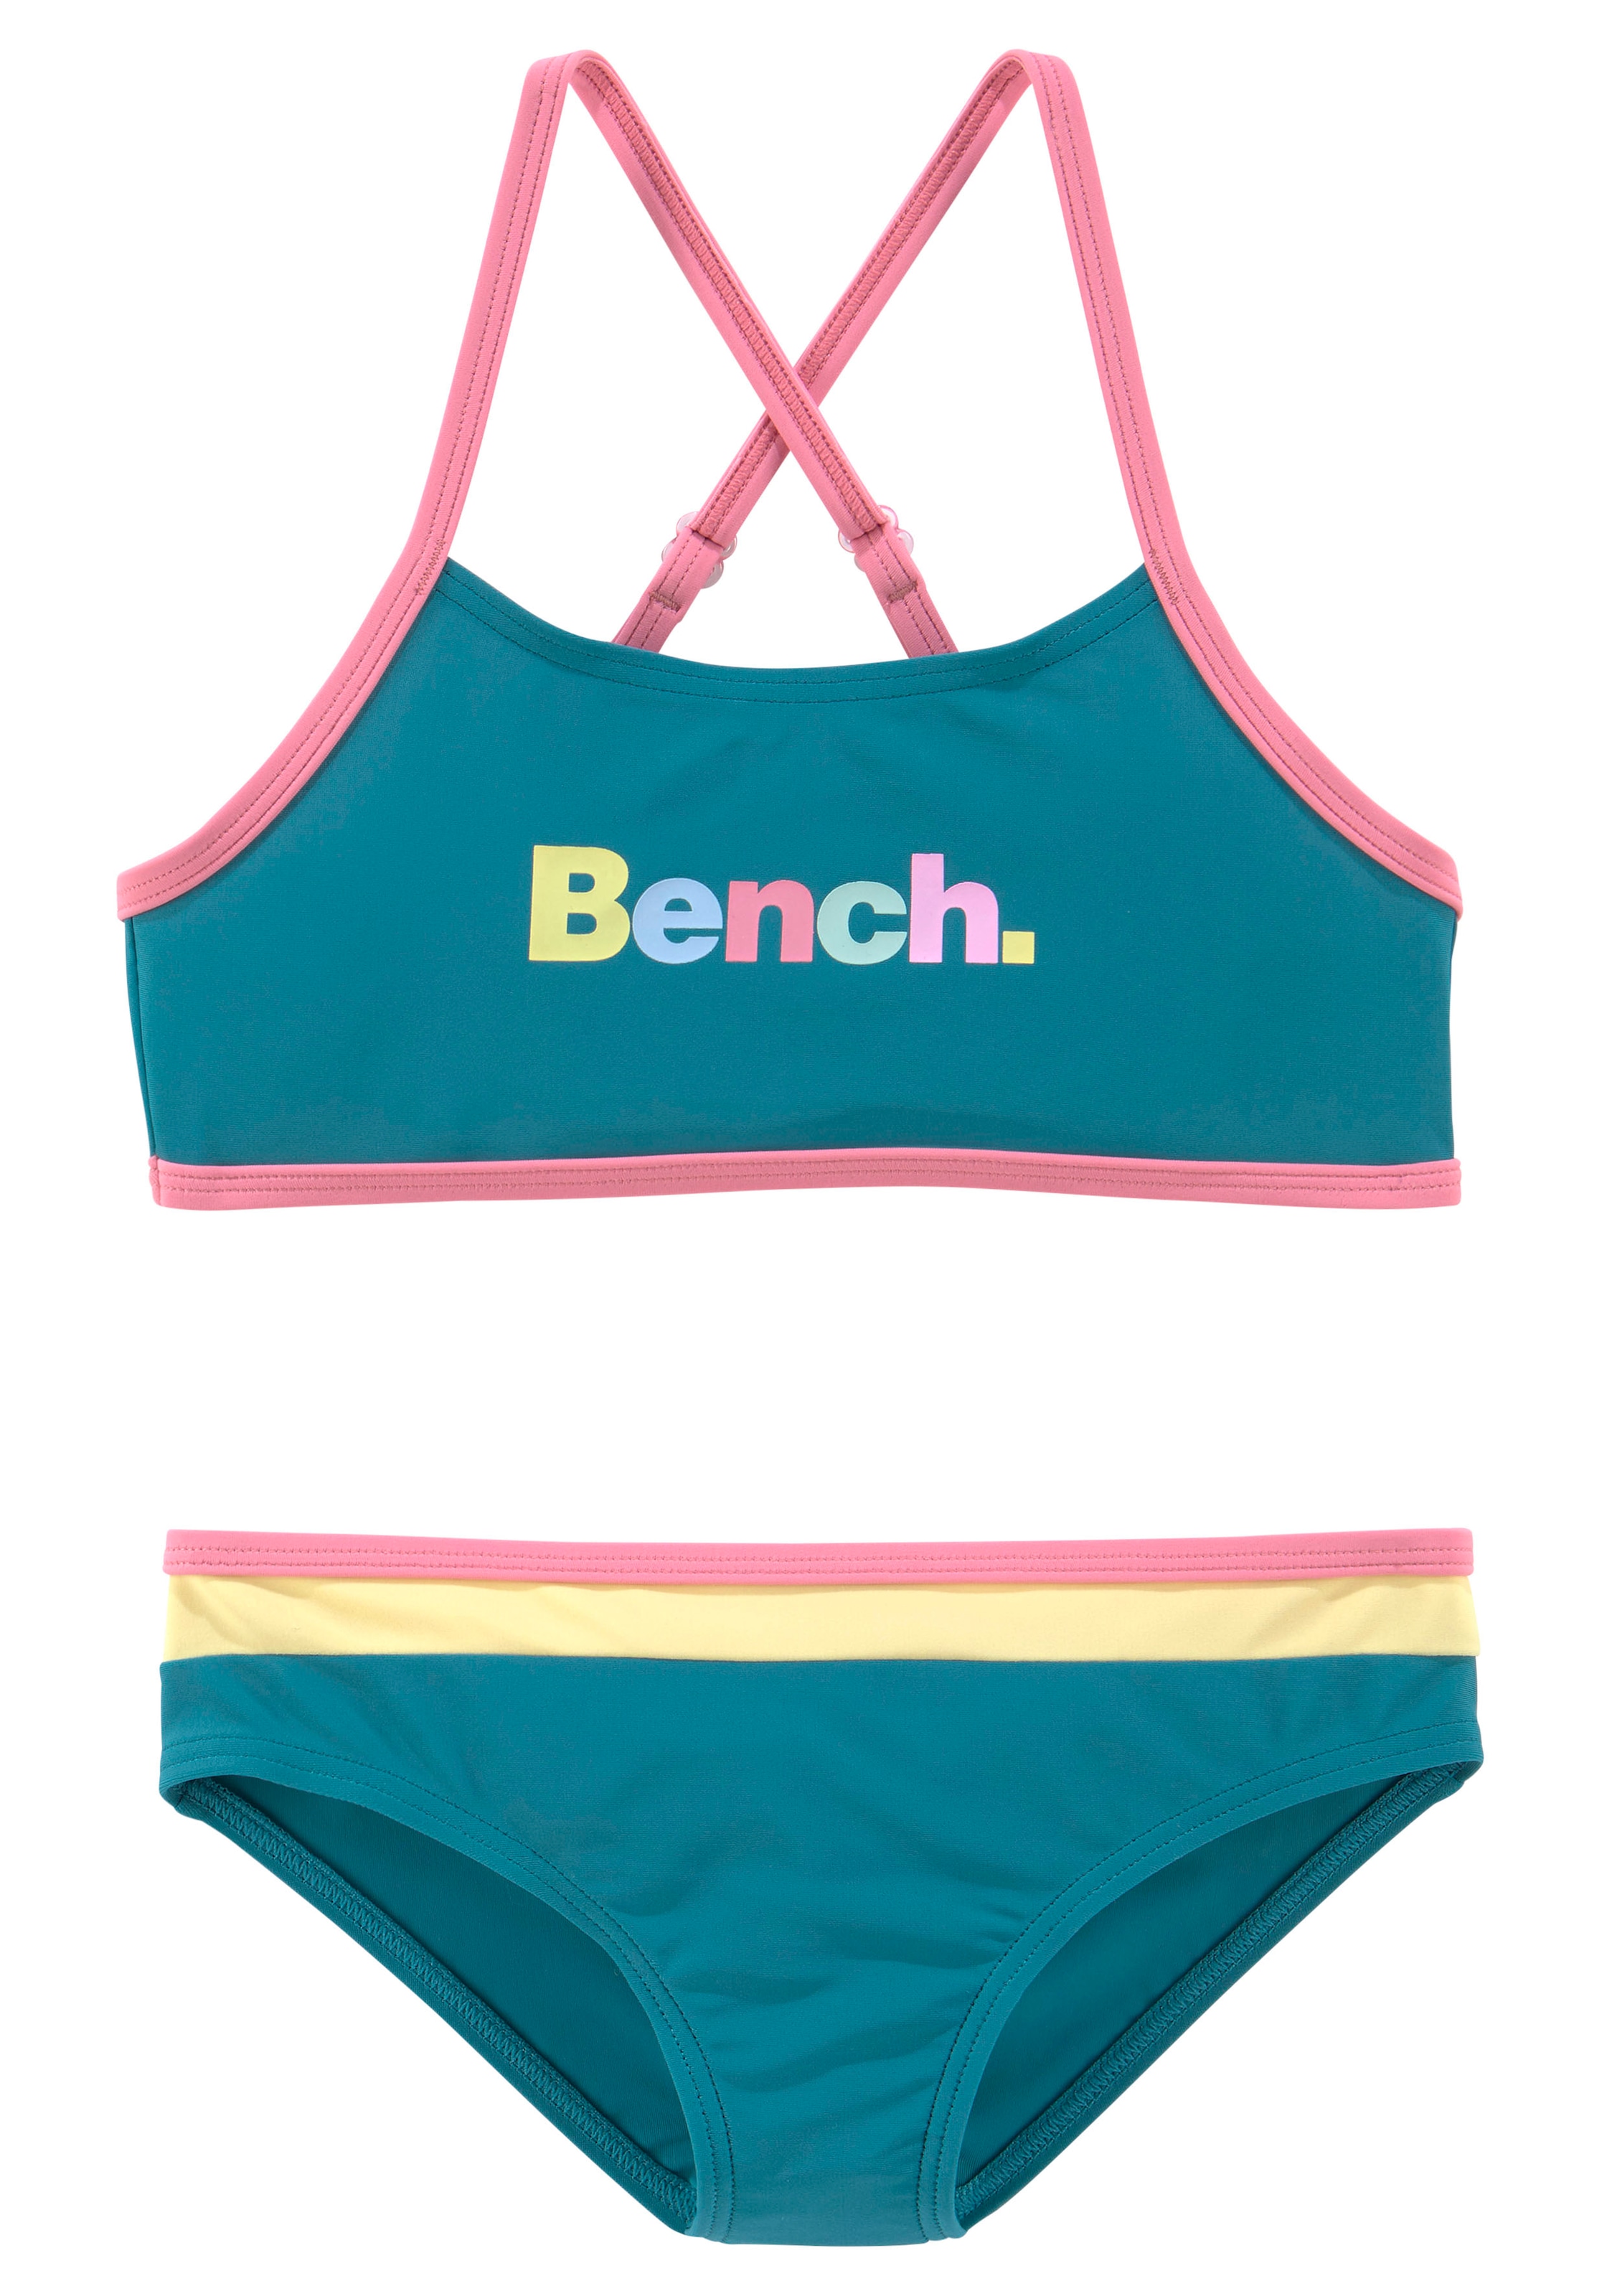 Bench. Bustier-Bikini, mit bunten Details bei OTTO